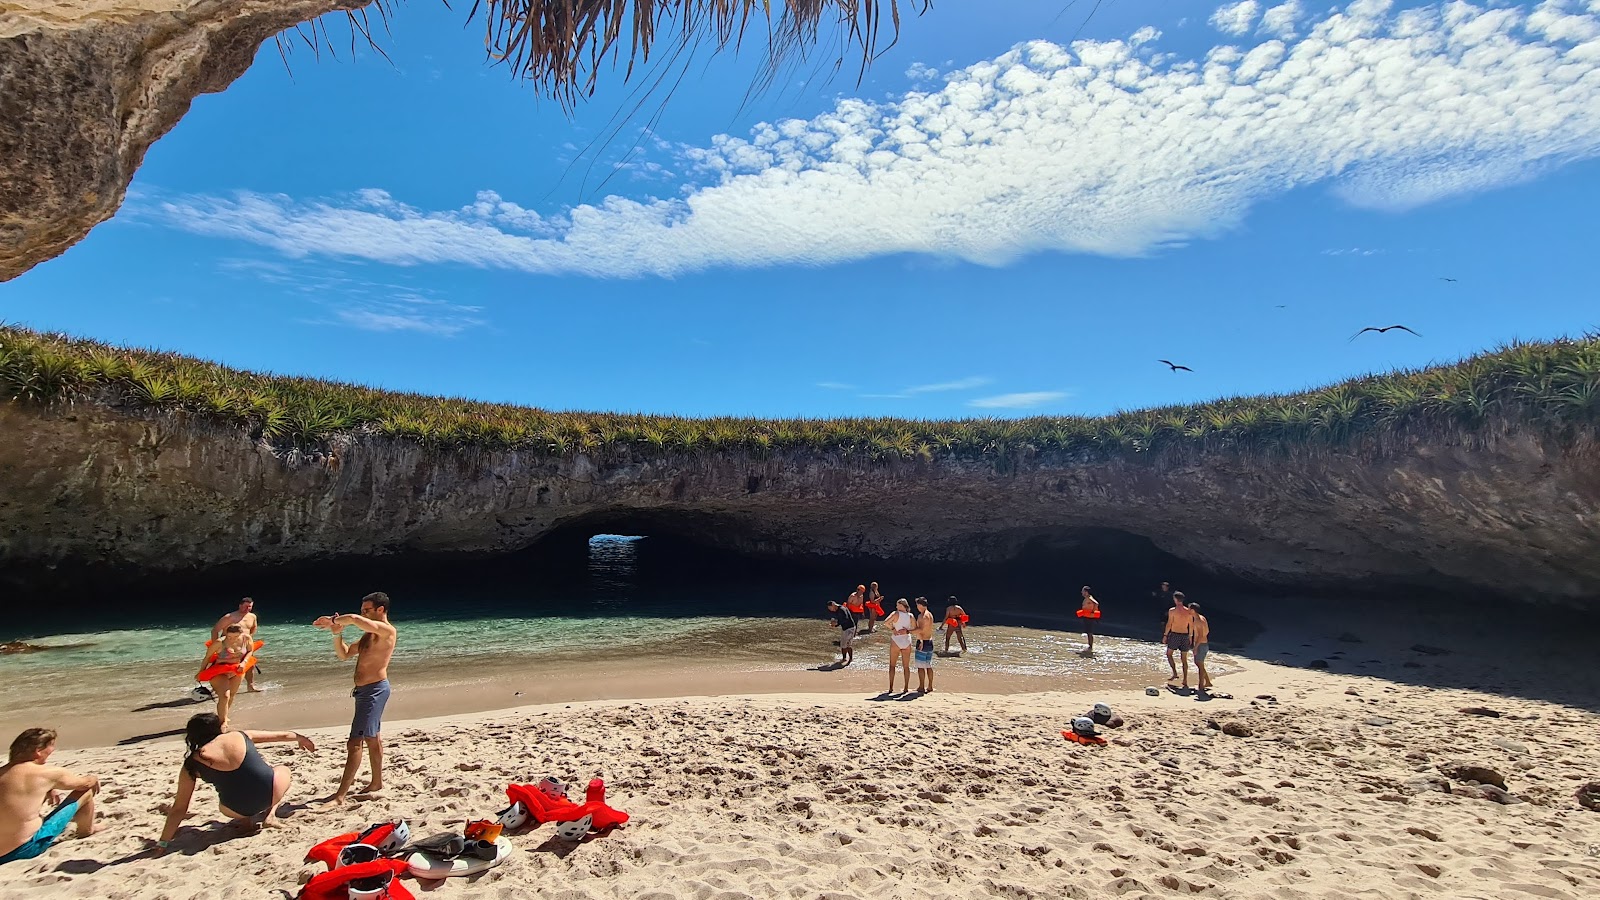 Valokuva Playa del Amor (Hidden beach)ista. pinnalla turkoosi puhdas vesi:n kanssa